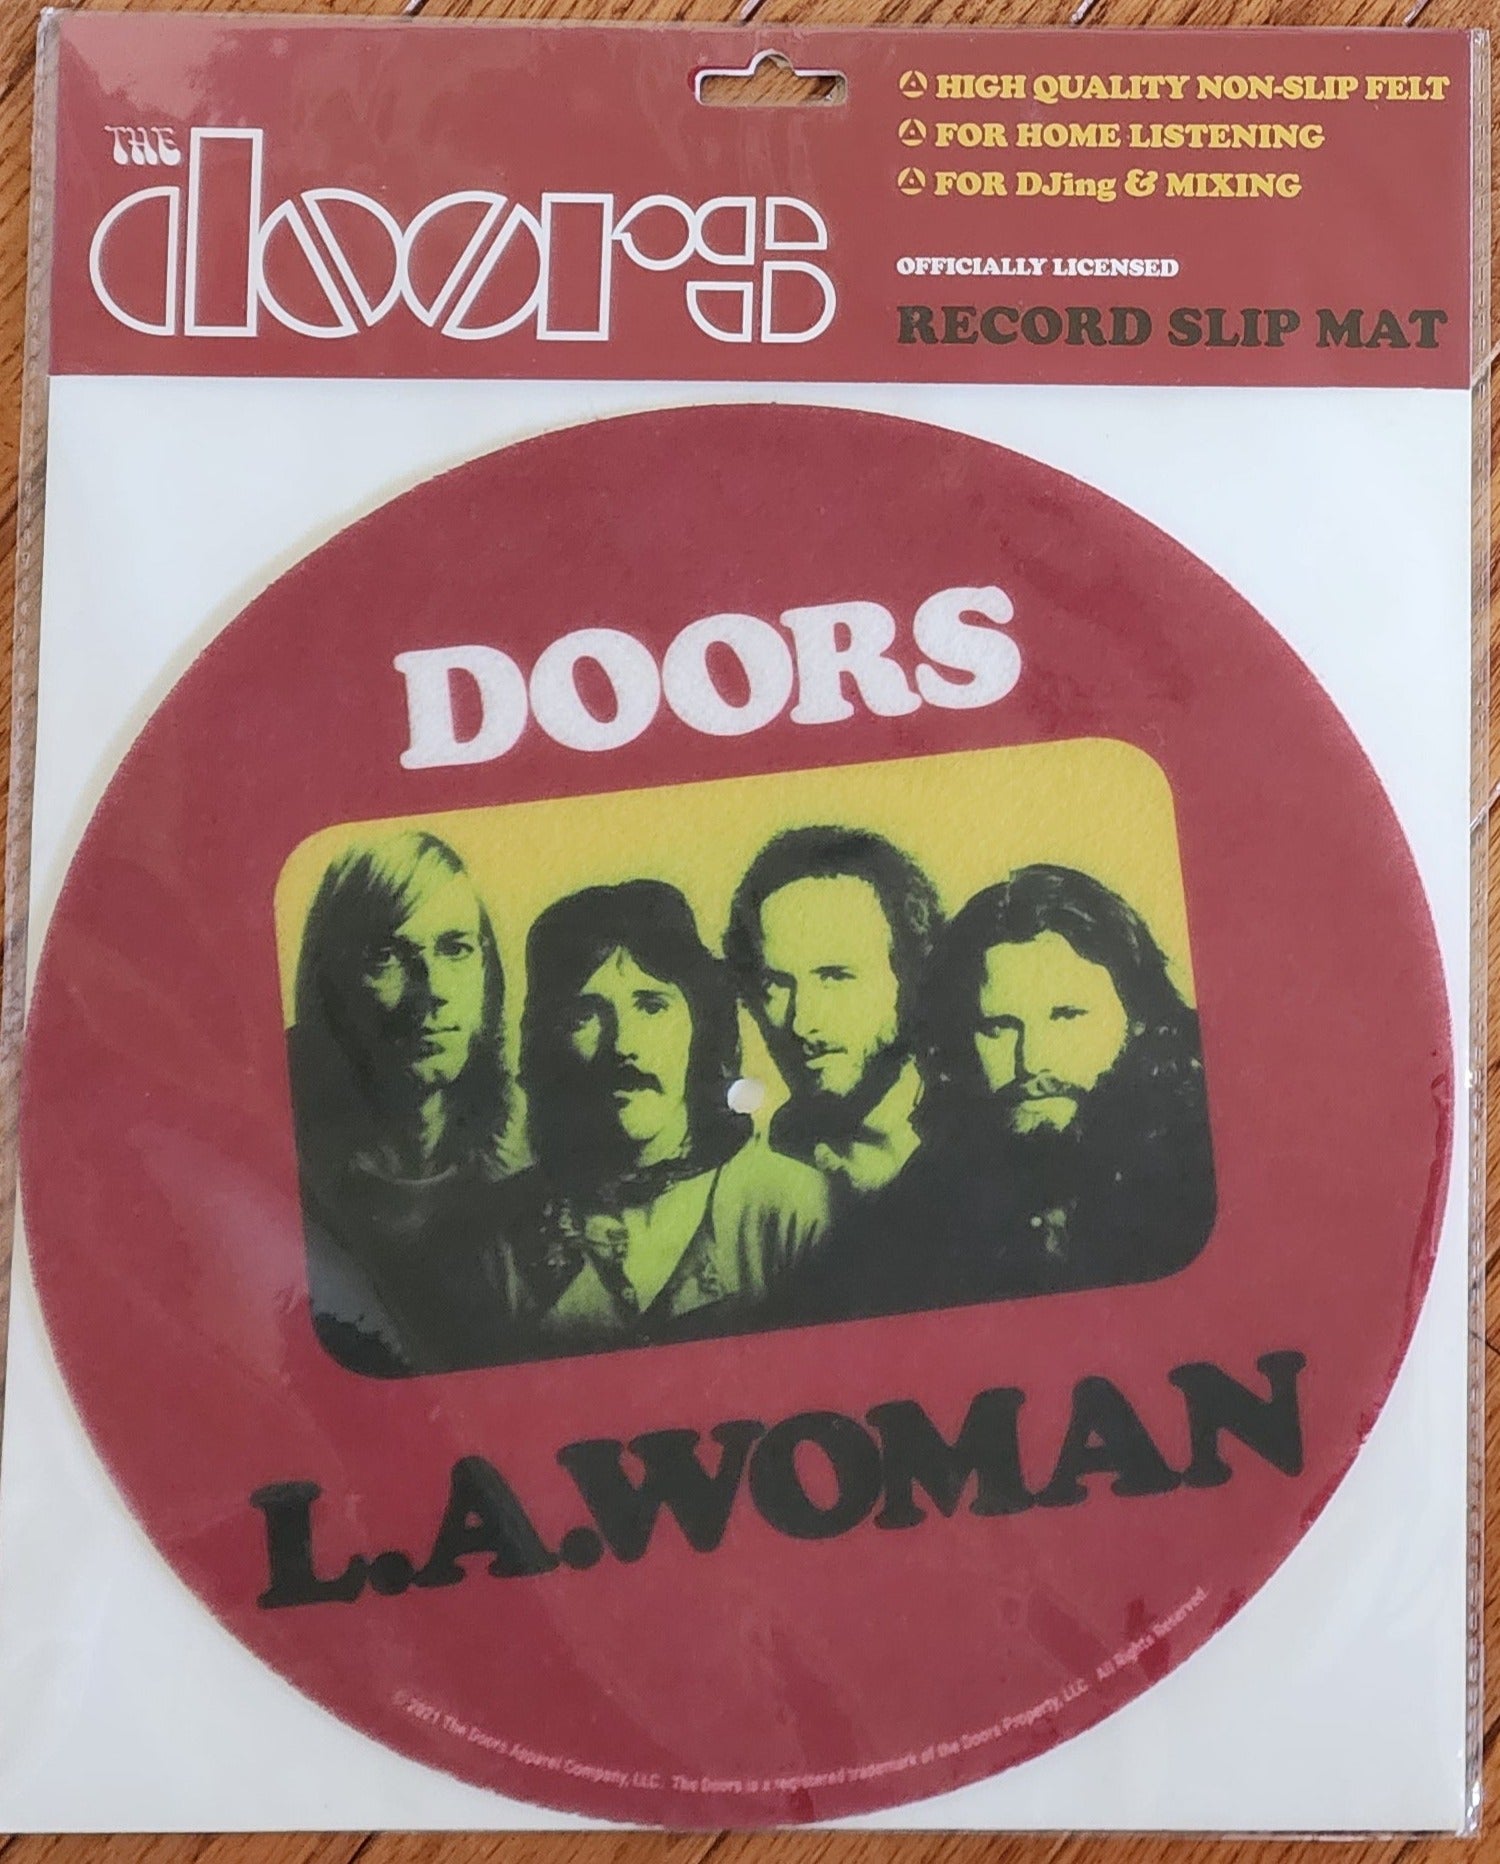 Doors L.A. Woman Record Slip Mat – Revival Records